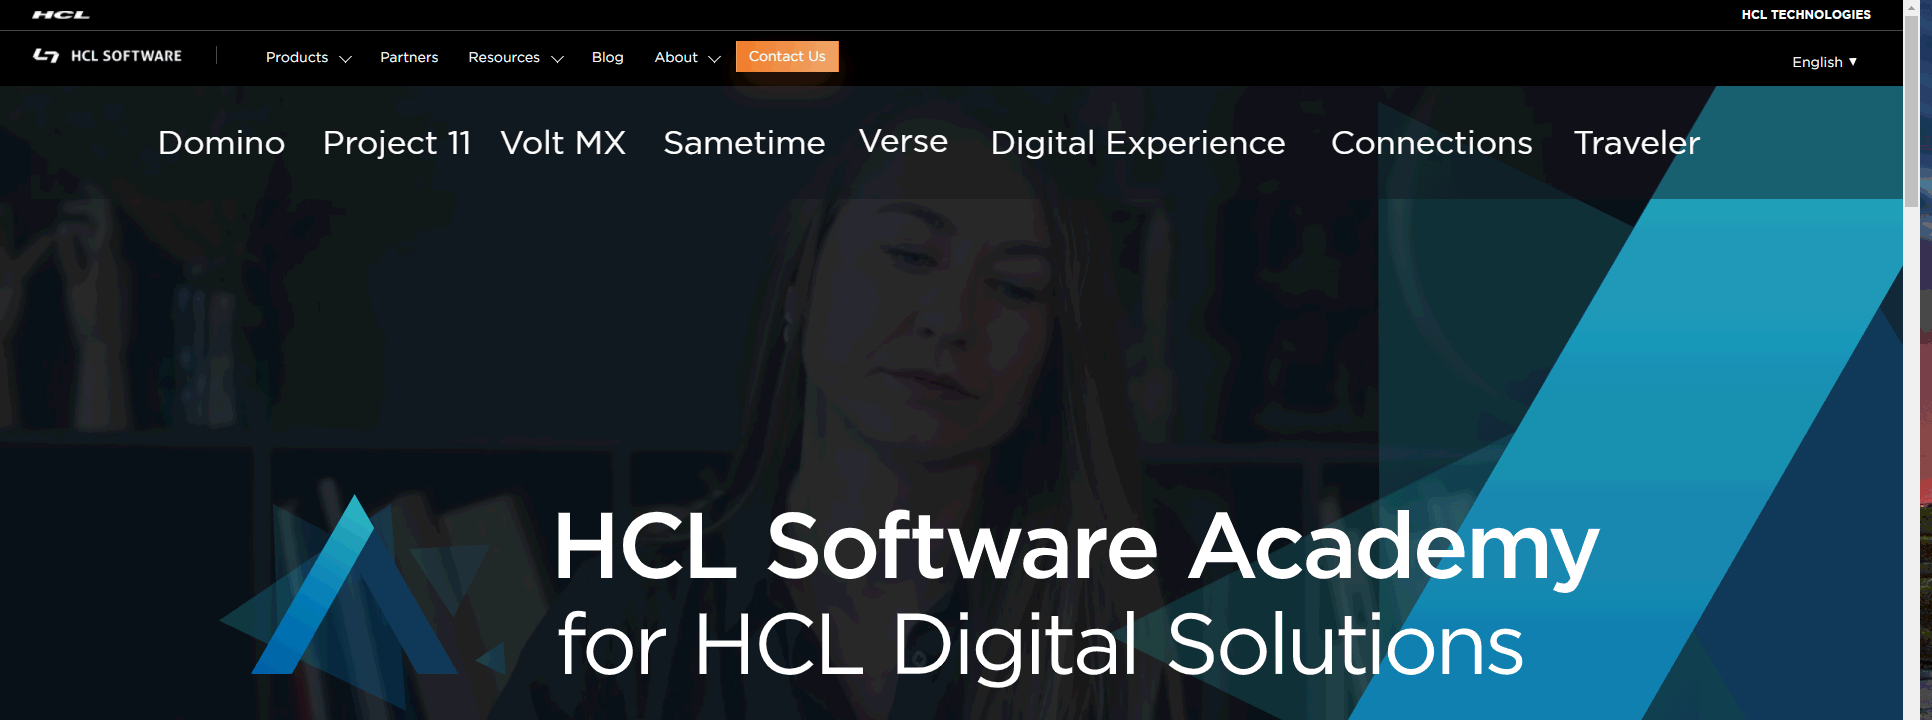 Image:tutti i webinar HCL Sofware Academy - passato e futuro